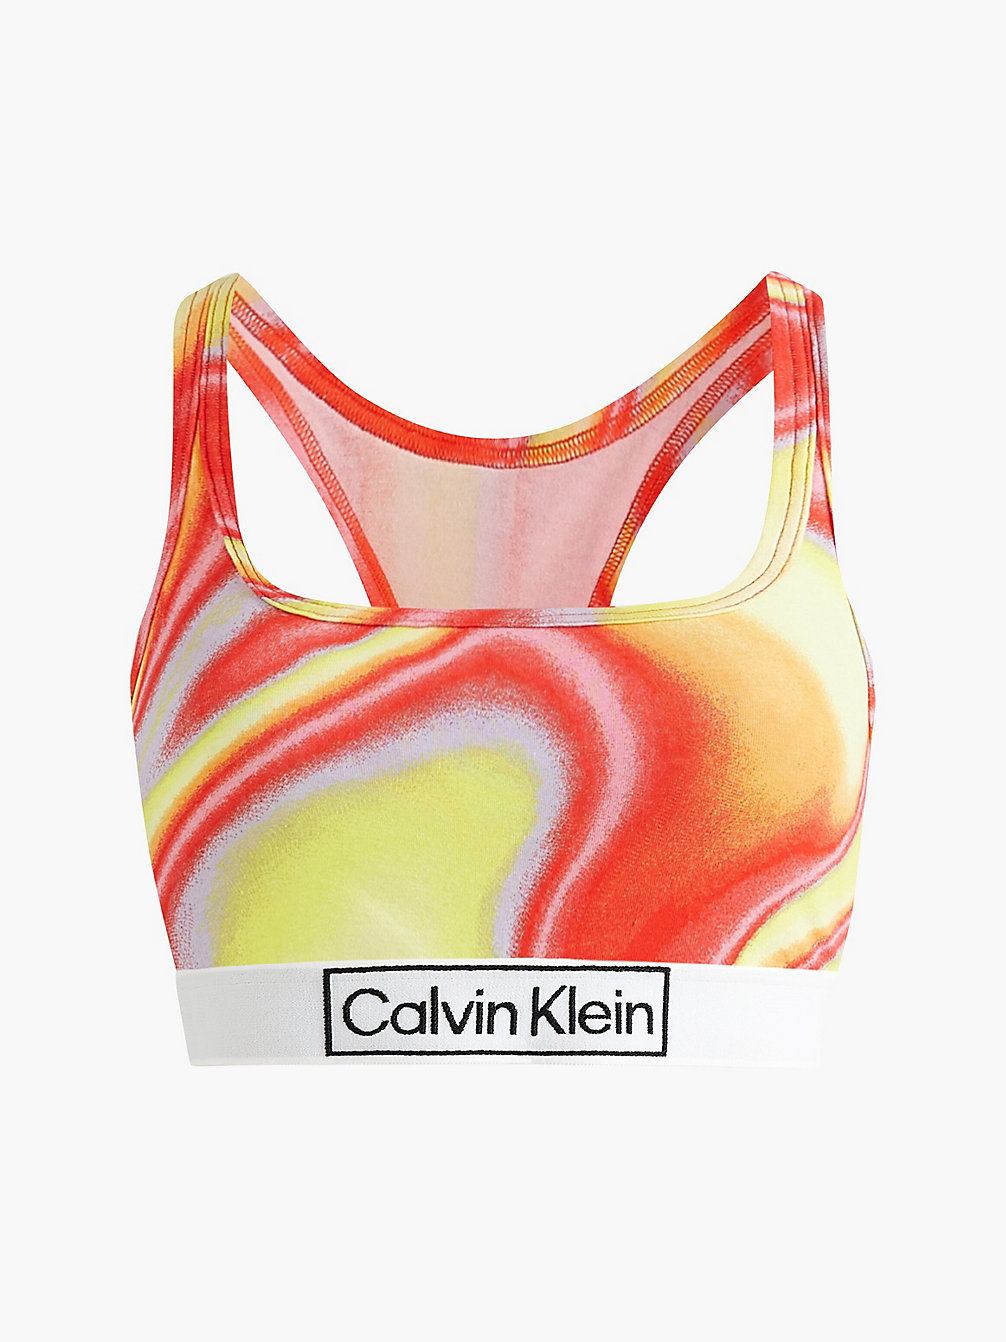 IRIDESCENT PRINT_TUSCAN TERRA COTTA Brassière - Pride undefined donna Calvin Klein